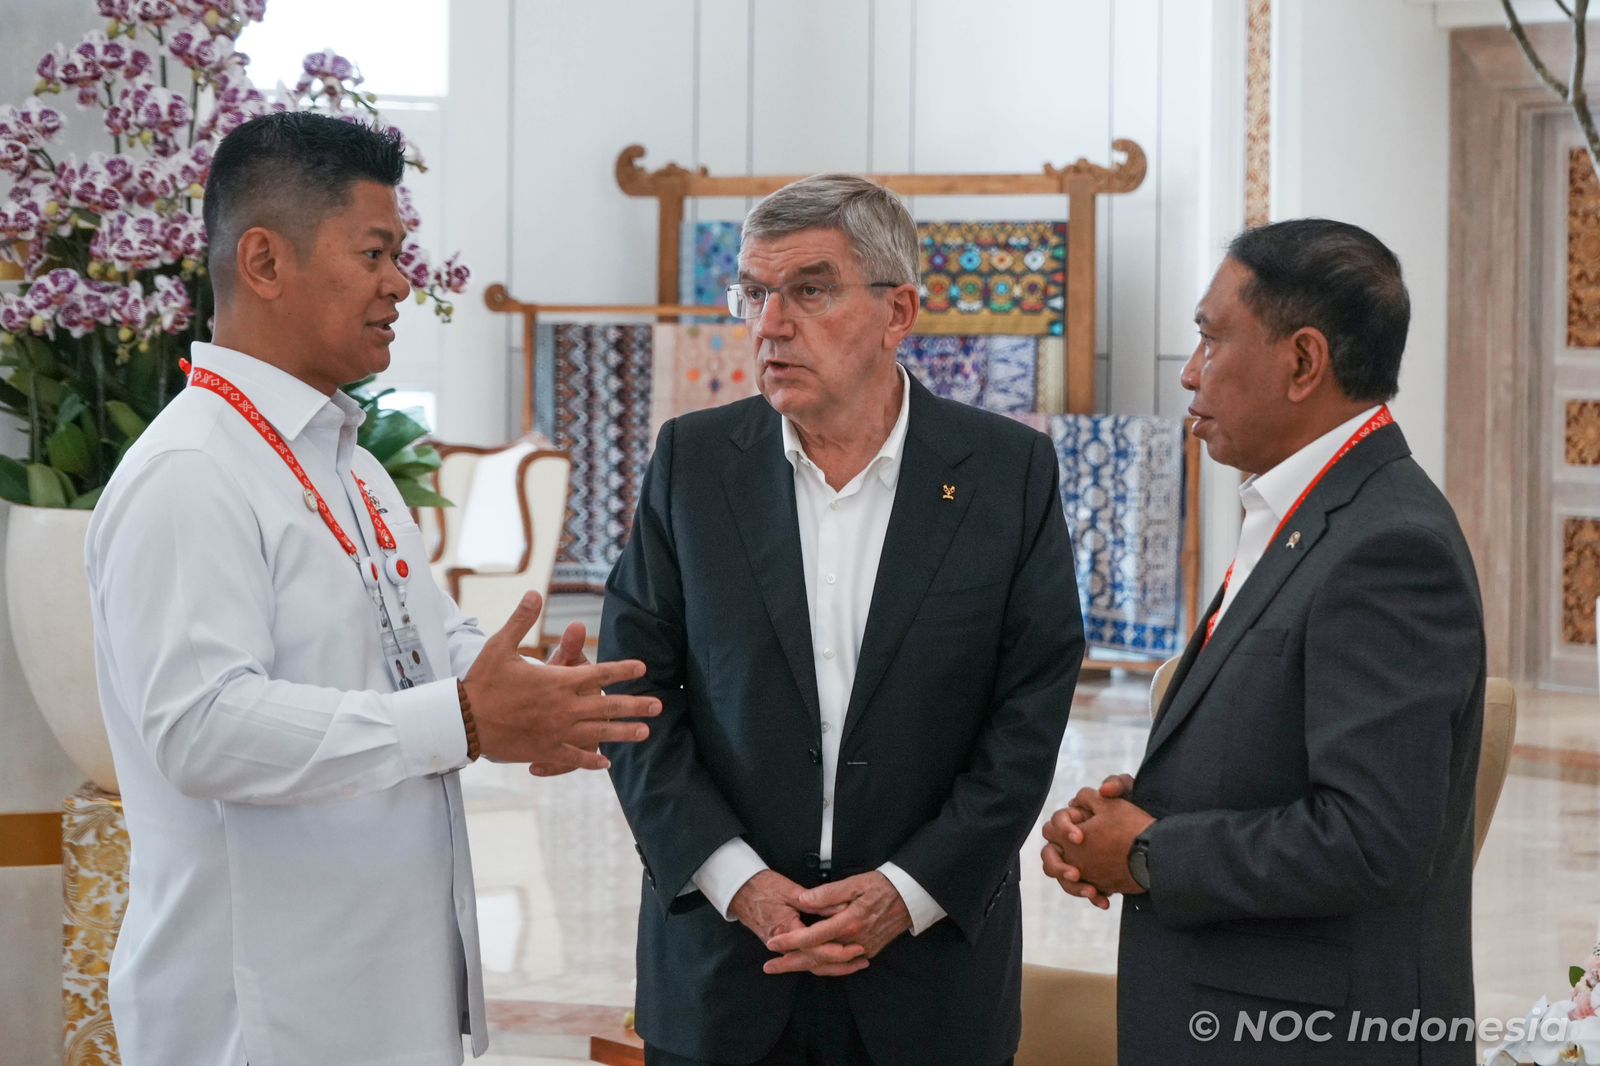 Kesehatan Pele Memburuk, Presiden IOC Kirim Doa Kesembuhan